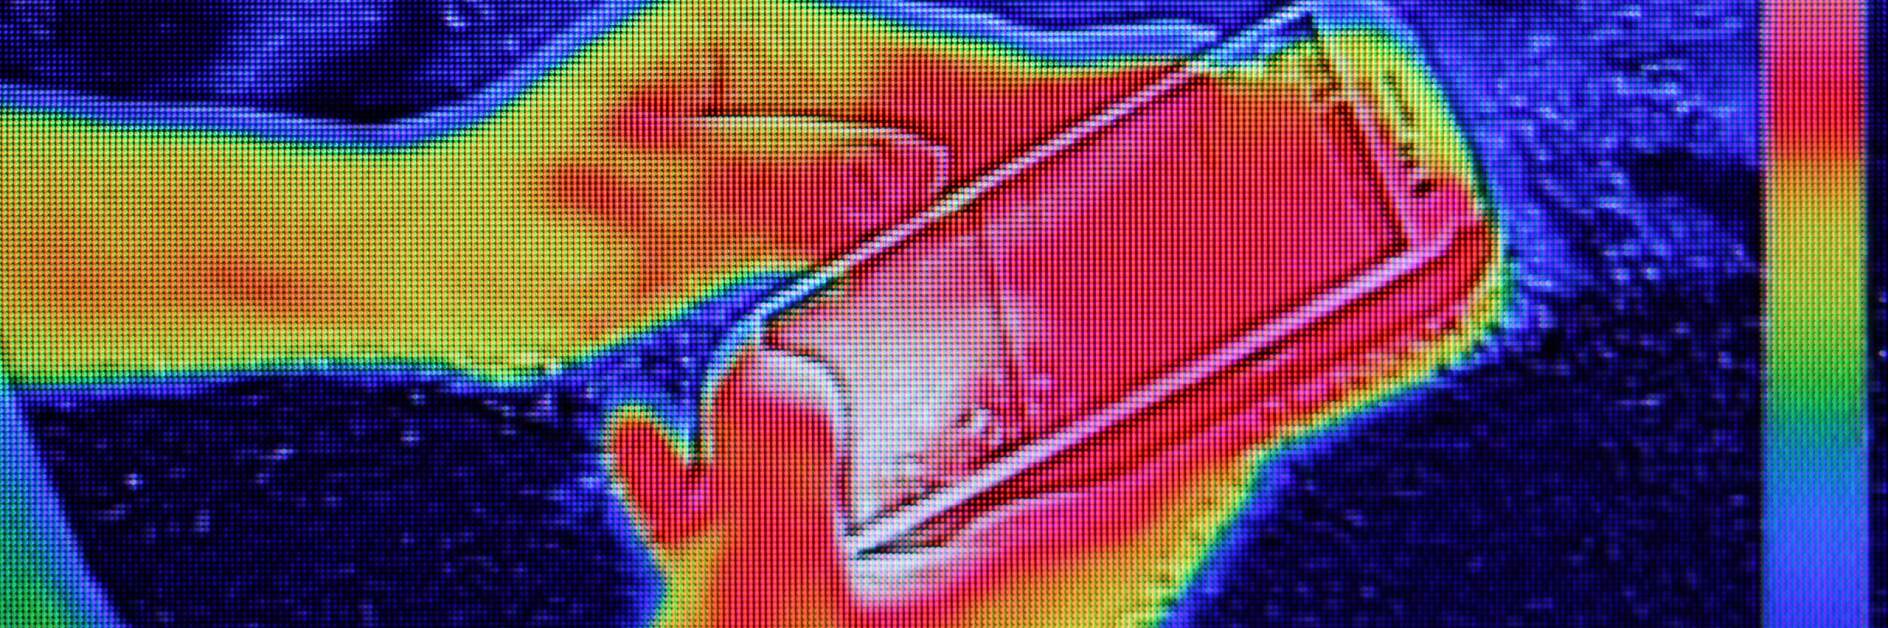 Imagen infrarroja que muestra la emisión de calor cuando una niña usa un smartphone